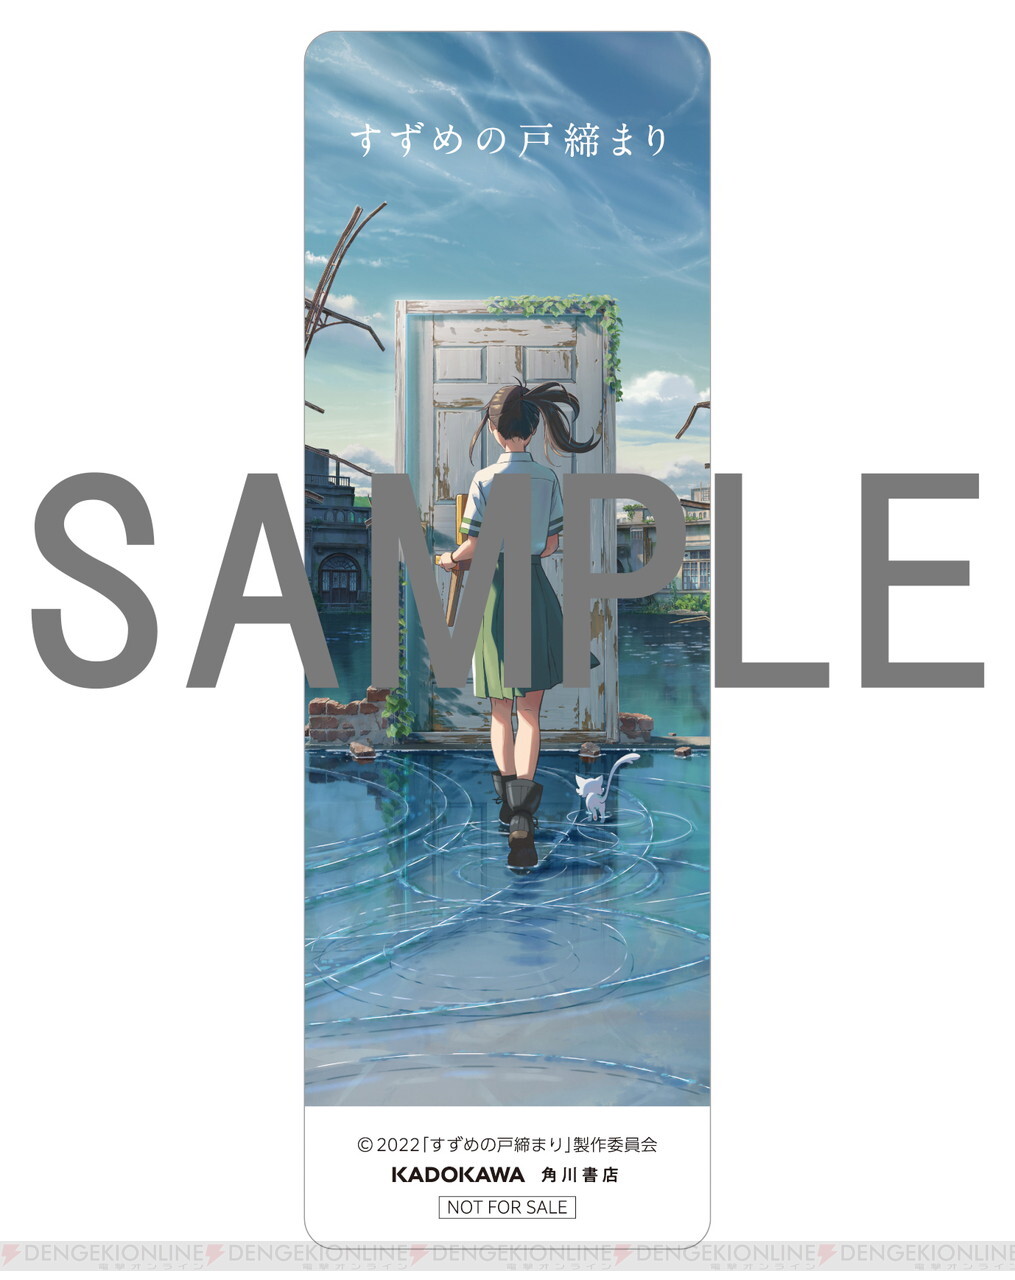 すずめの戸締まり 新海誠絵コンテ集 7』が発売決定。Amazon＆カドカワ 